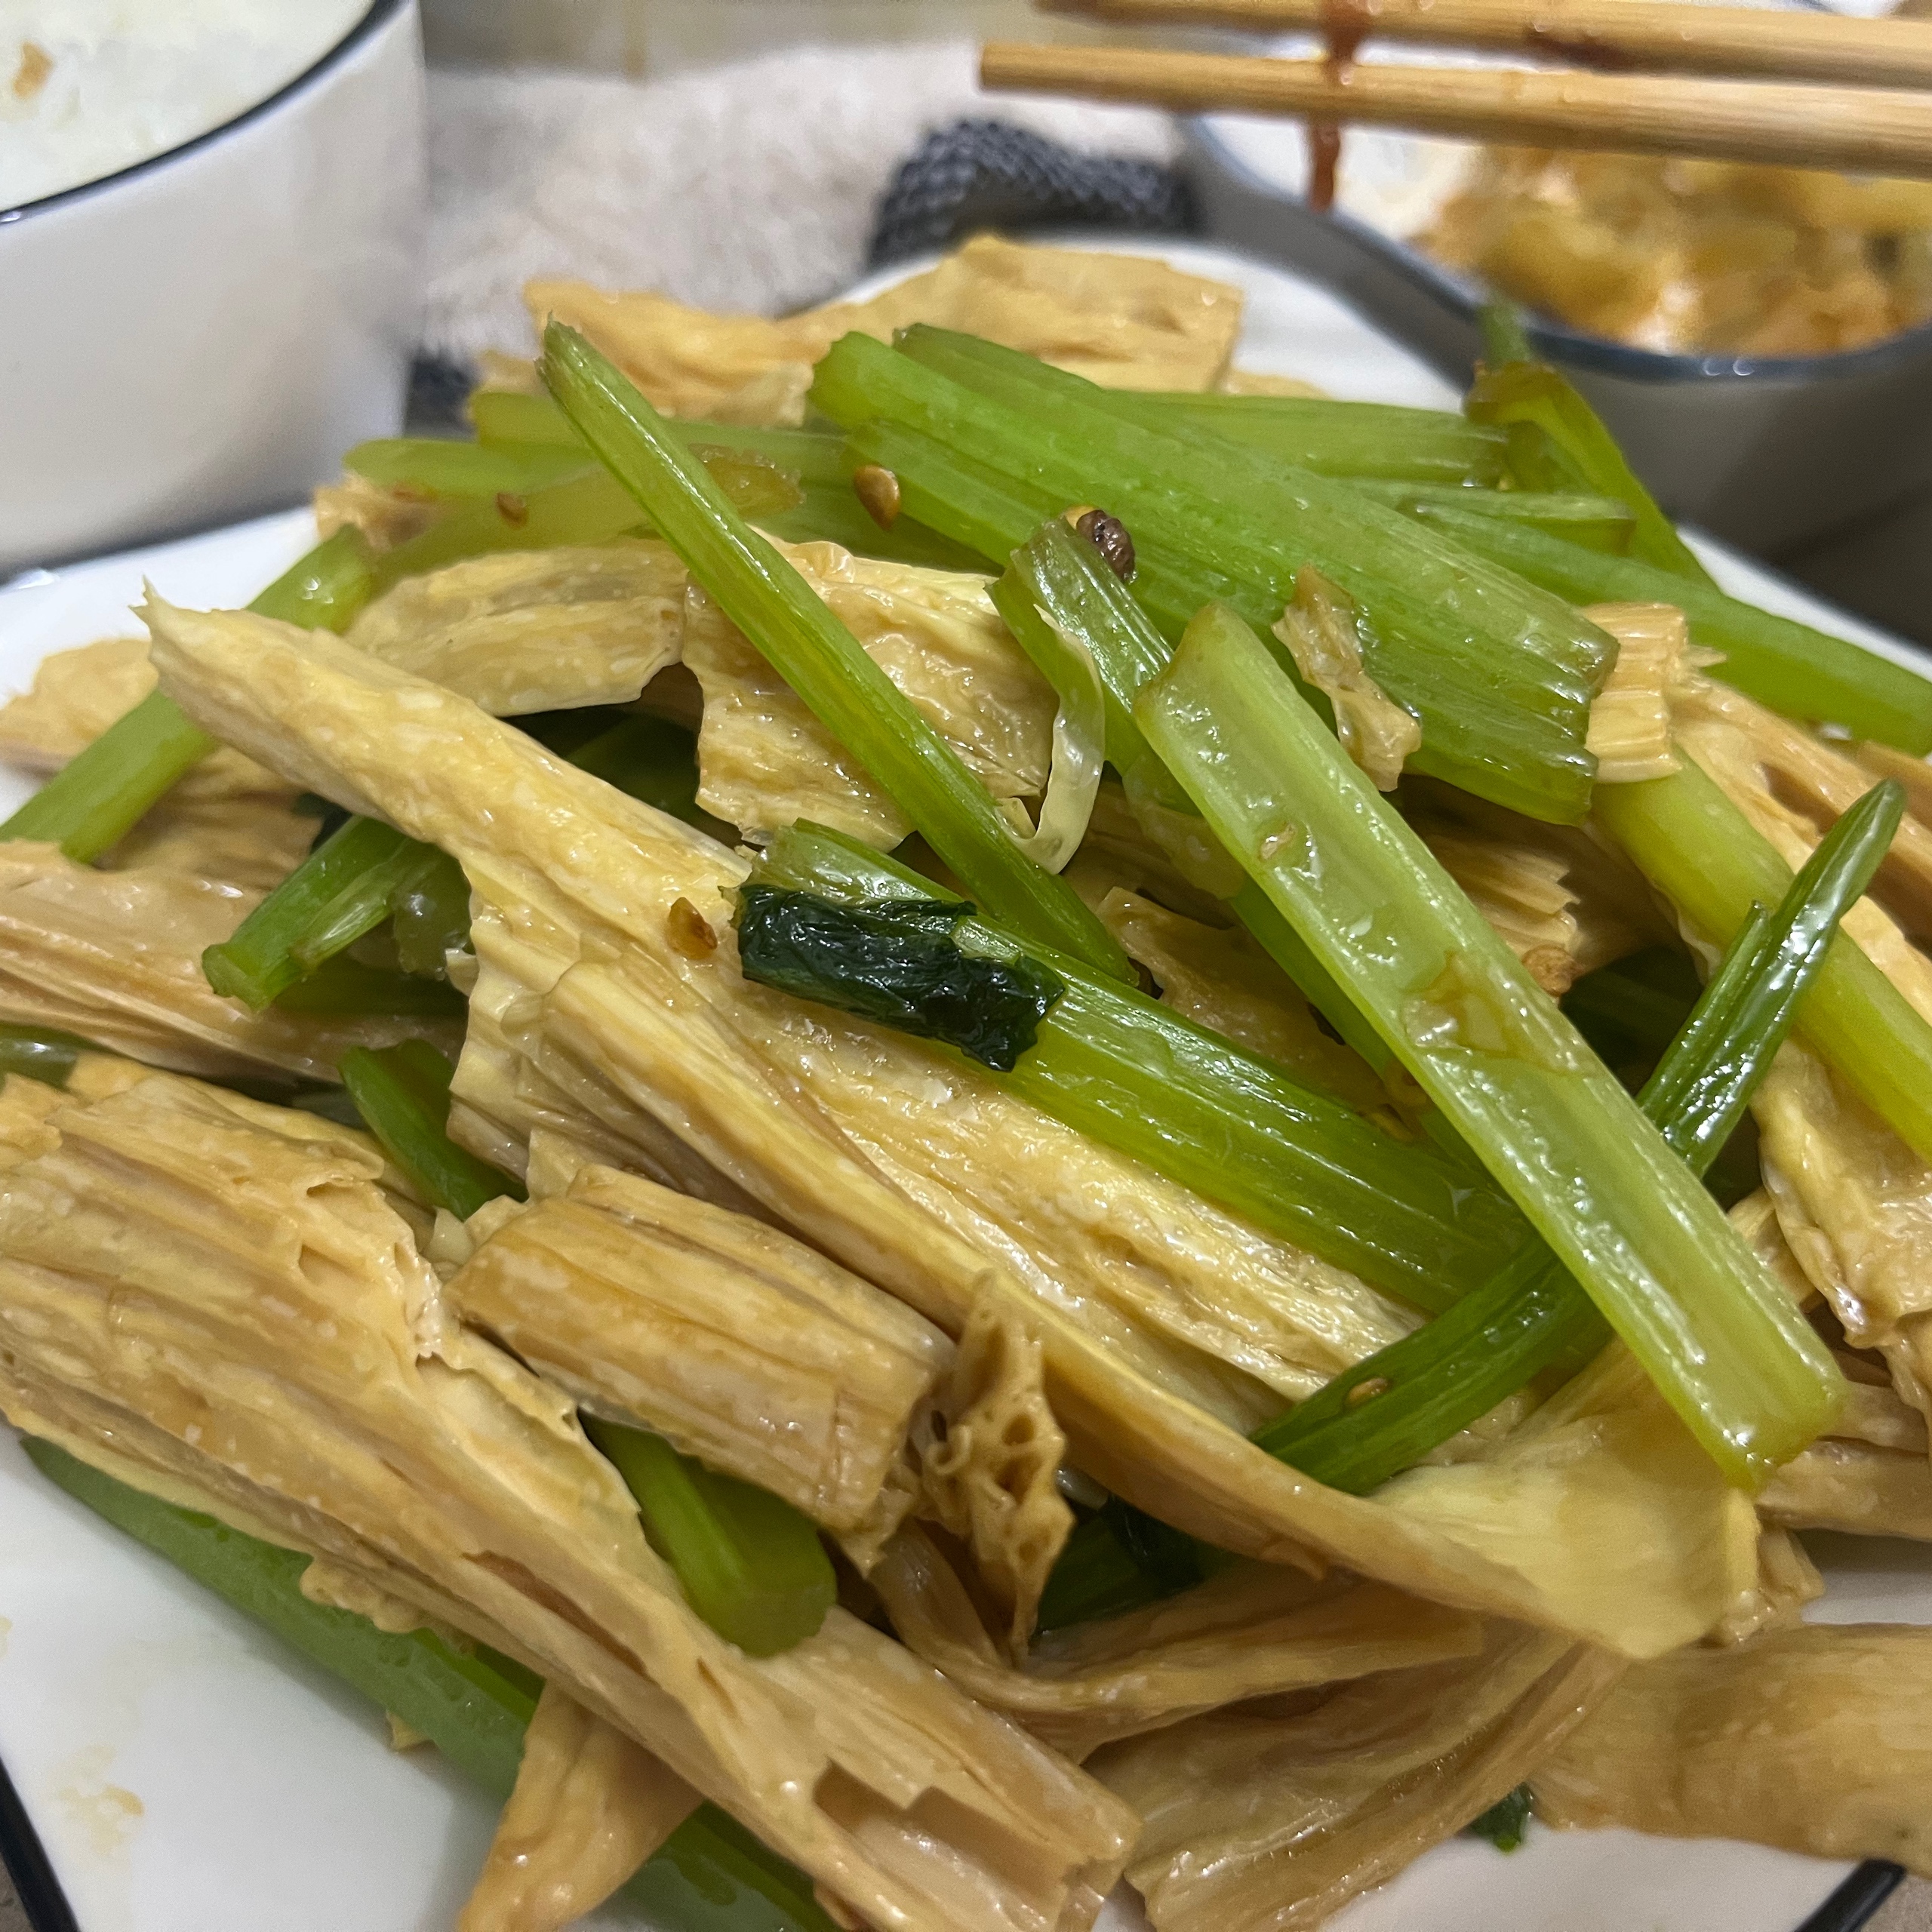 红油芹菜腐竹